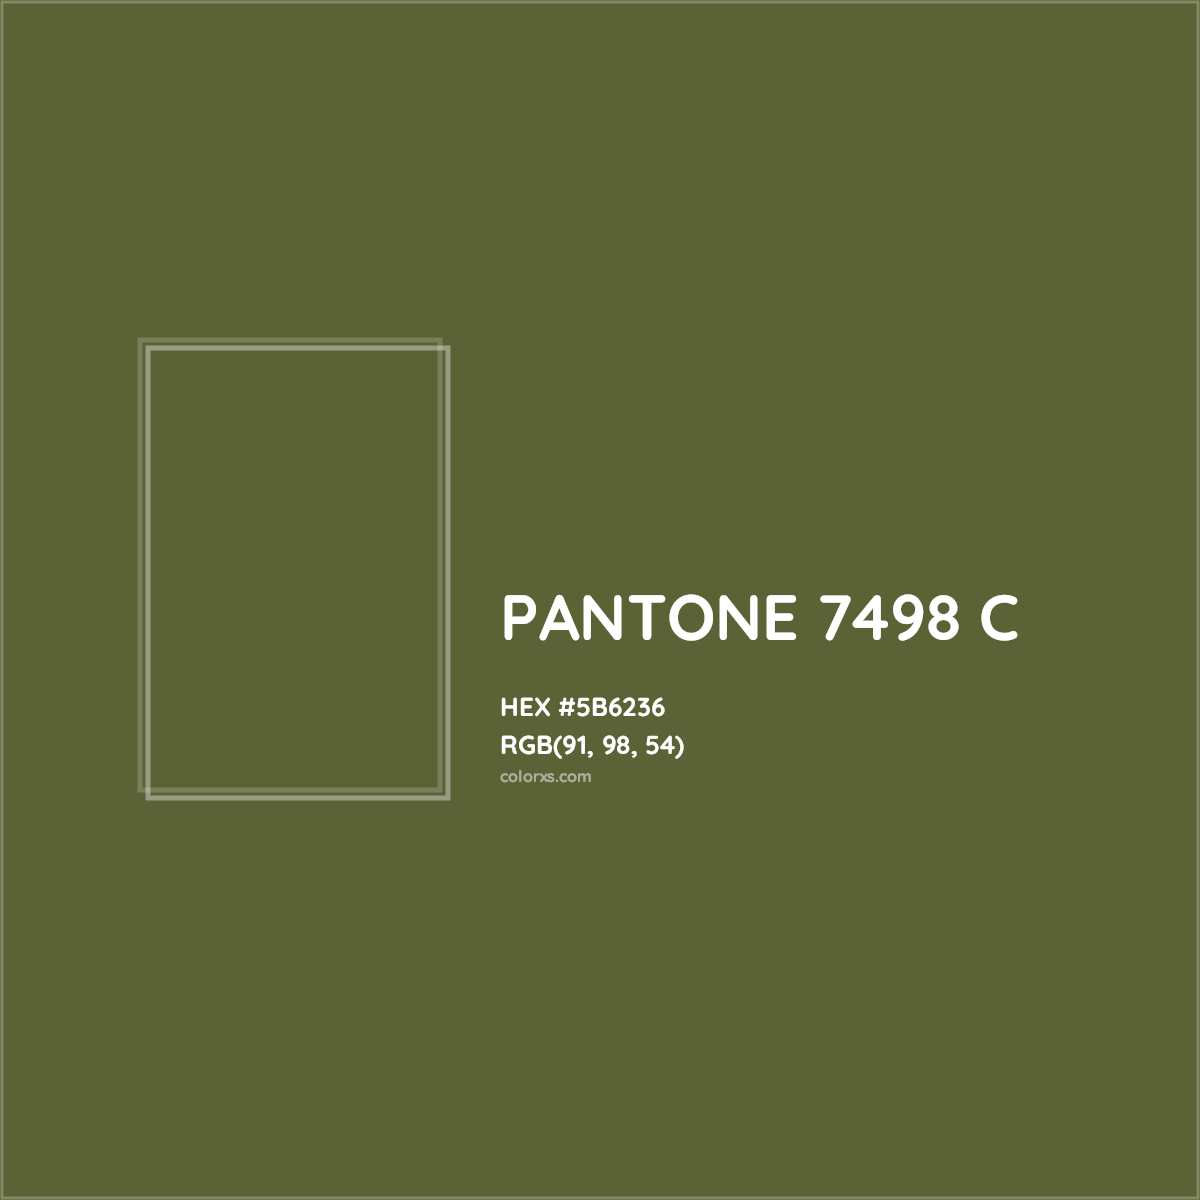 HEX #5B6236 PANTONE 7498 C CMS Pantone PMS - Color Code